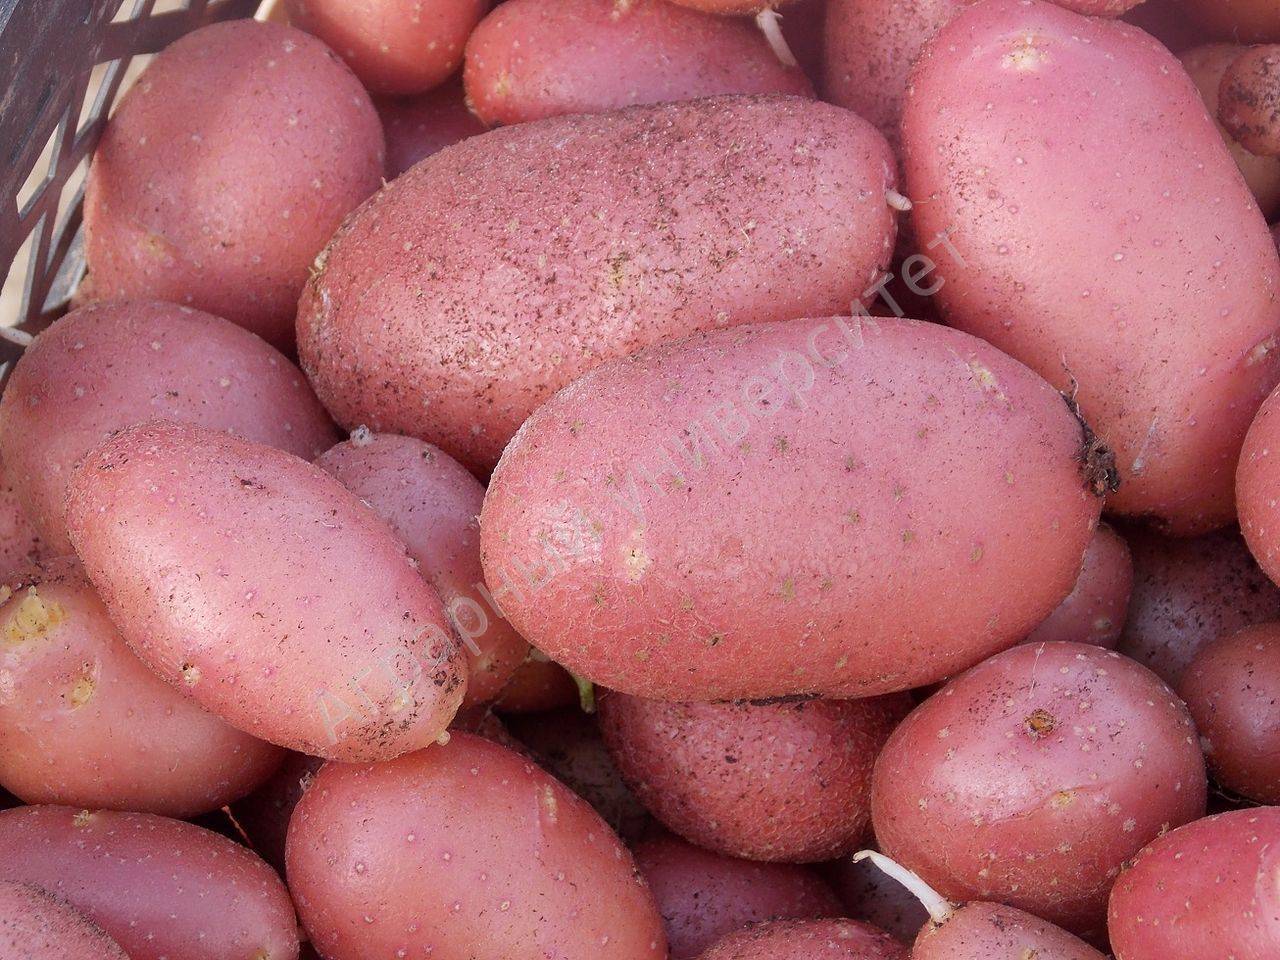 Лучшие сорта картофеля: описание, фото